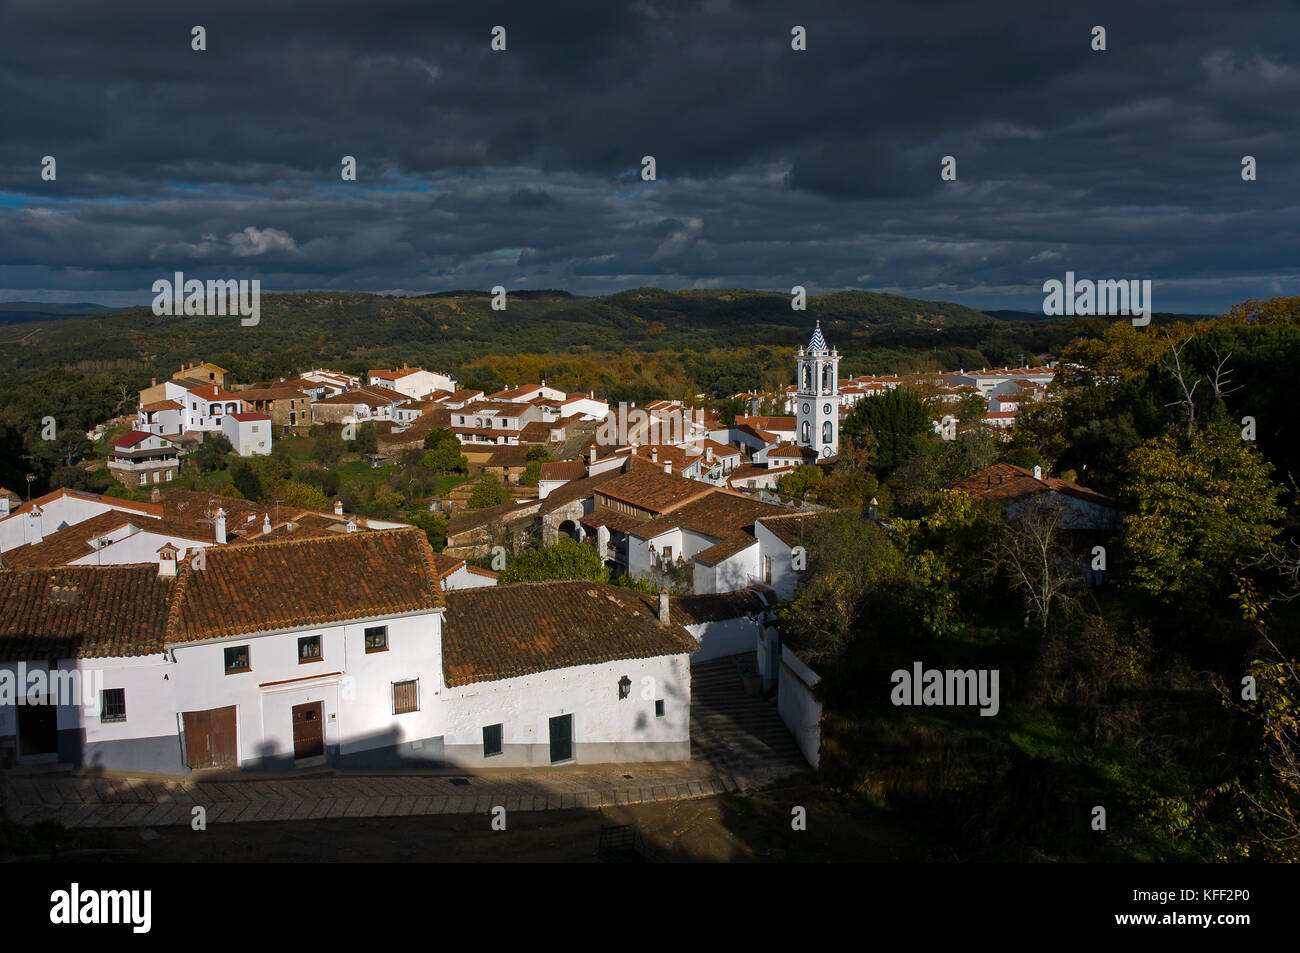 Vue panoramique, aracena, huelva province, région d'Andalousie, Espagne, Europe Banque D'Images